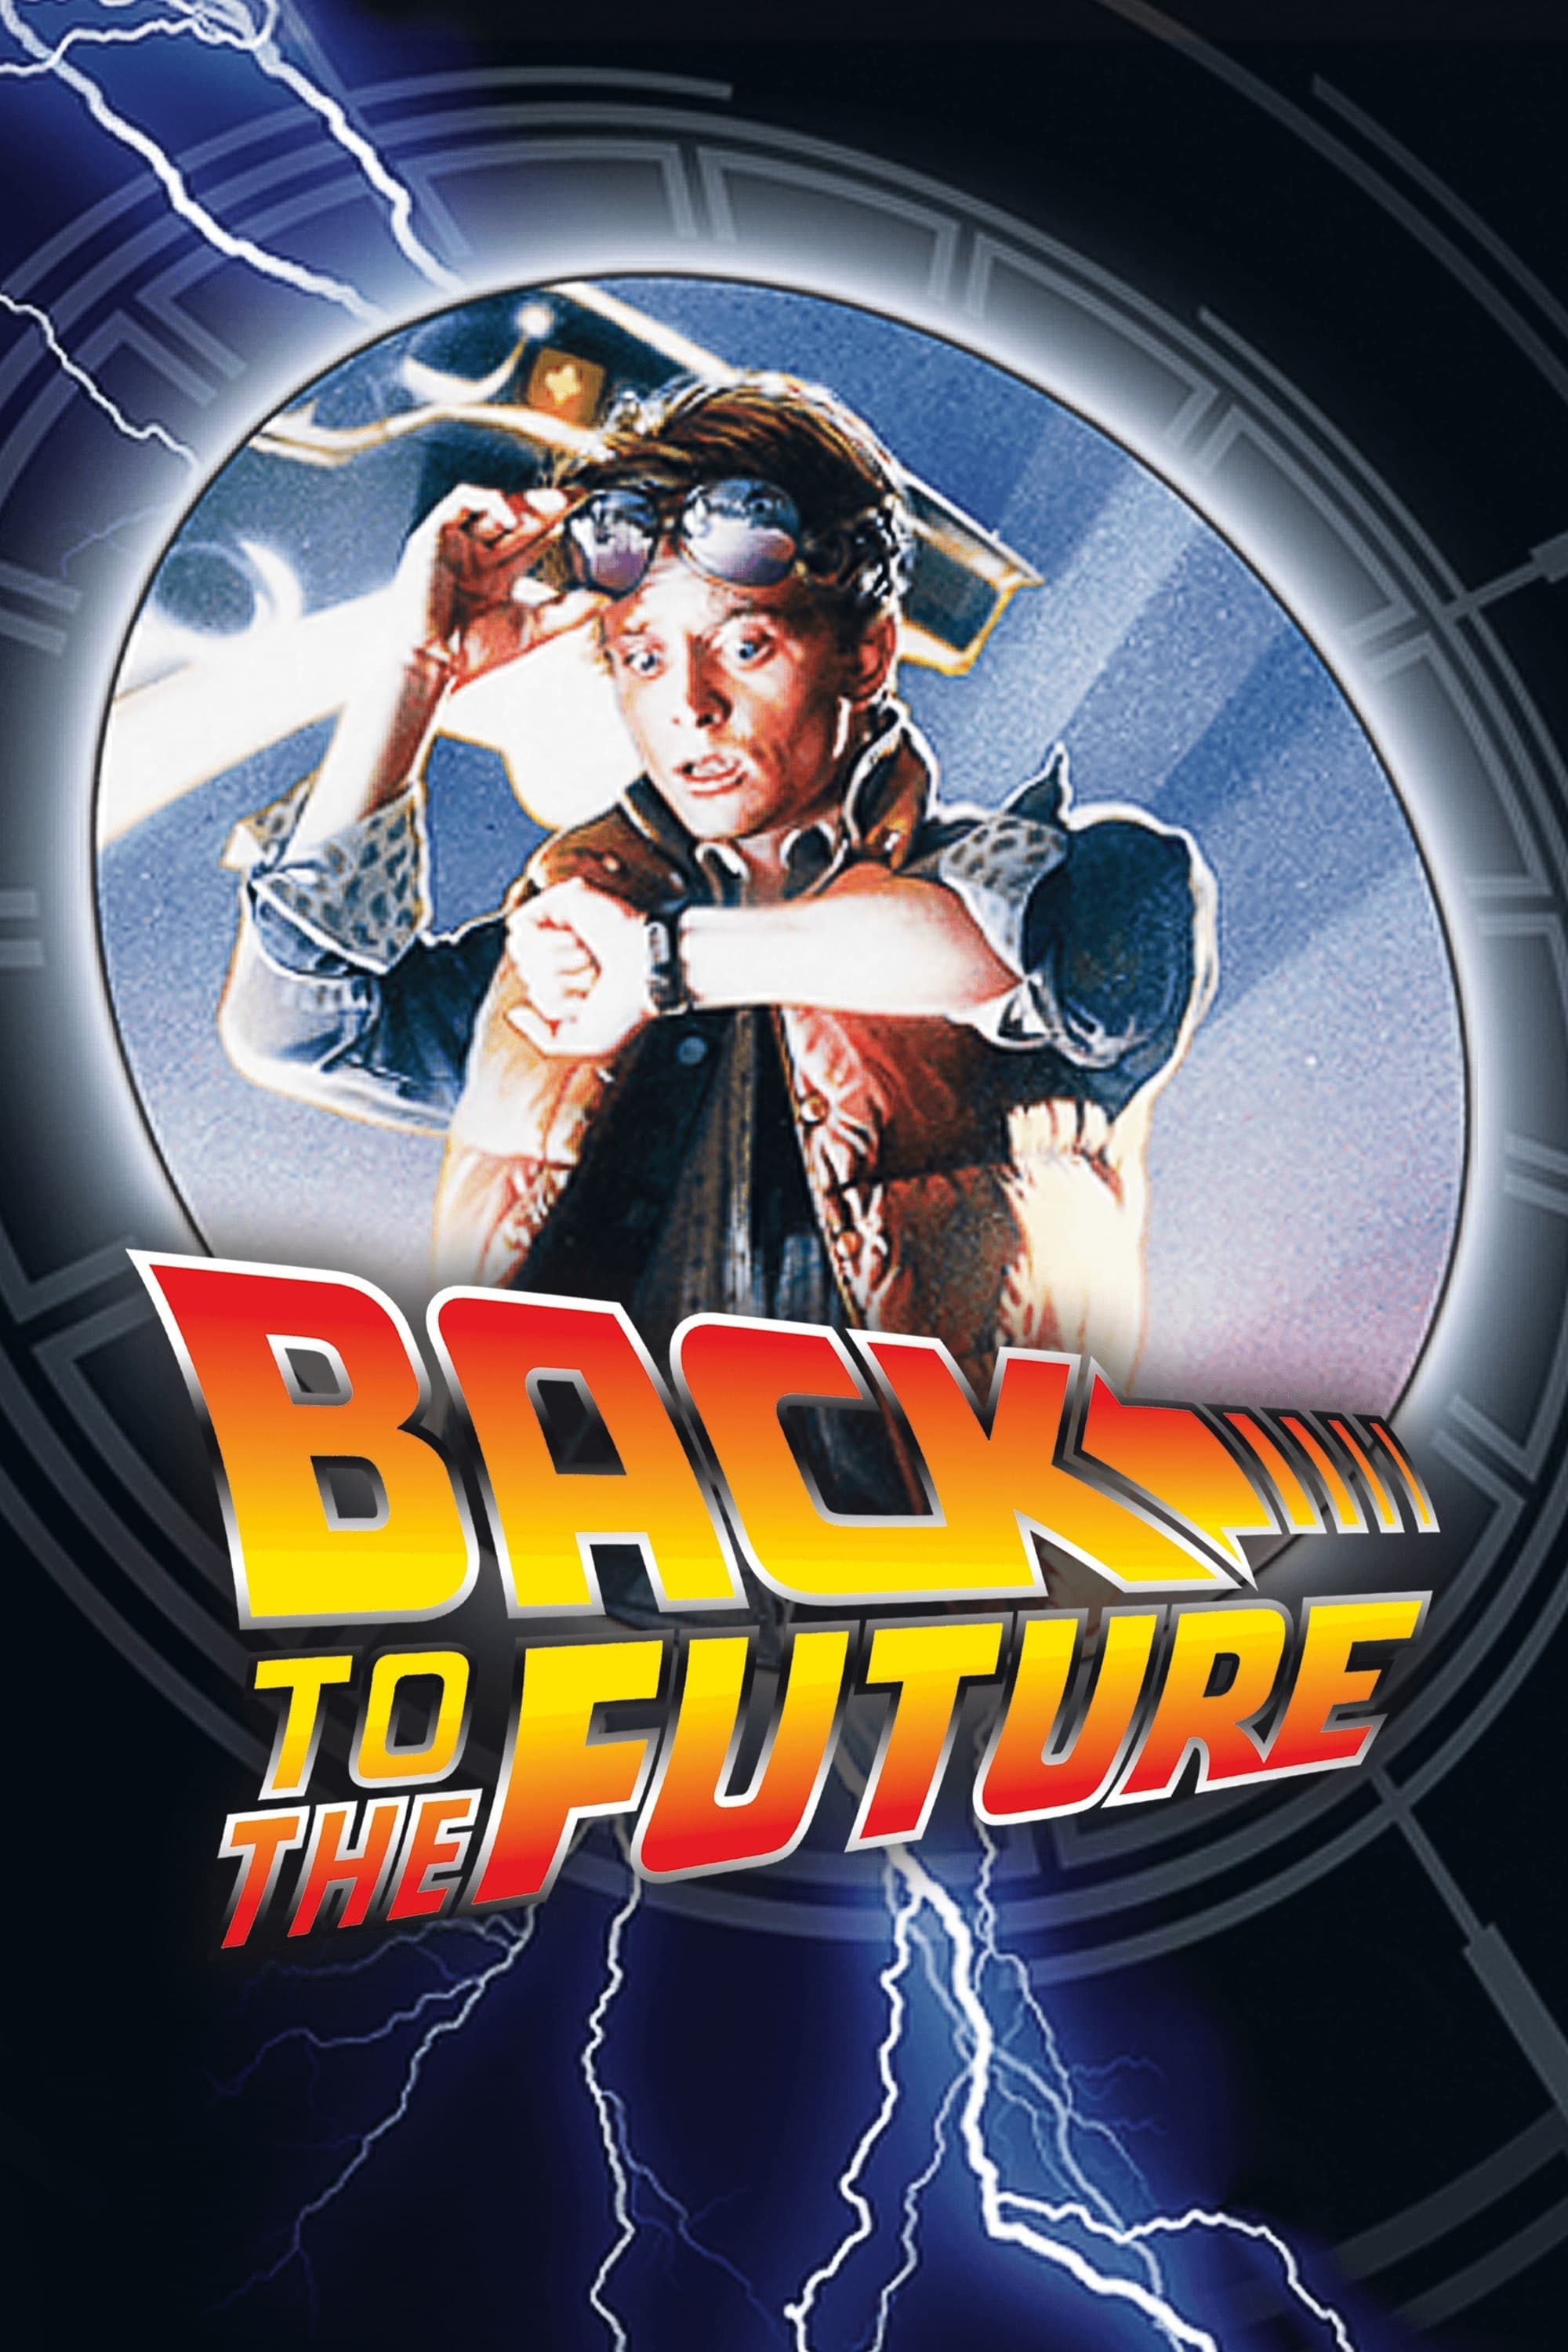 Regreso al futuro - Colección — The Movie Database (TMDB)